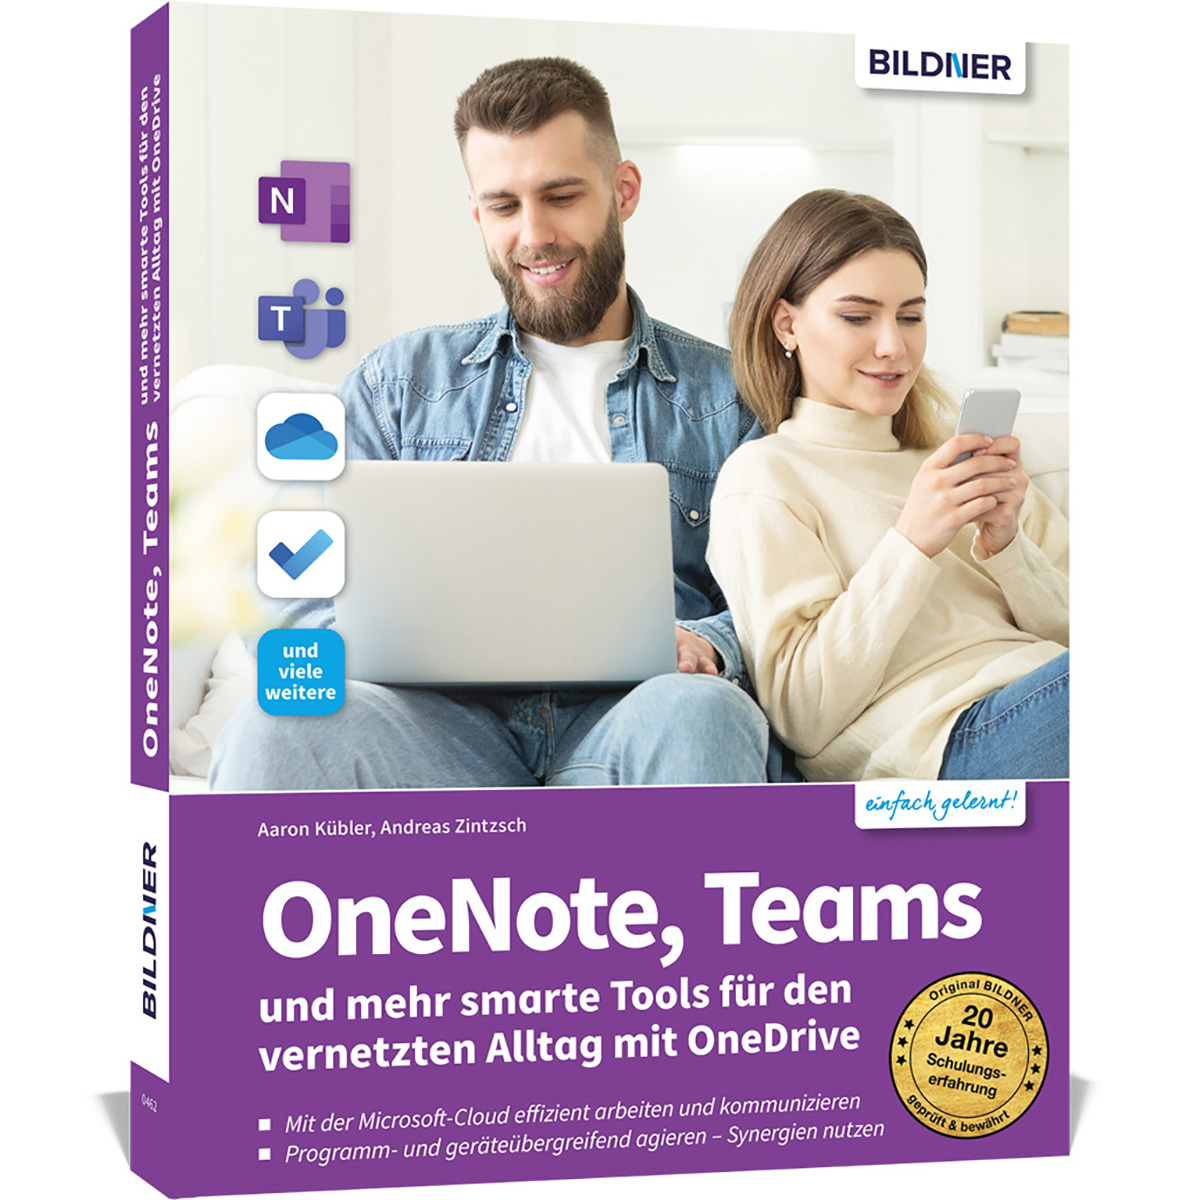 OneNote, Teams und mehr smarte Tools Microsoft-Alltag vernetzten den für